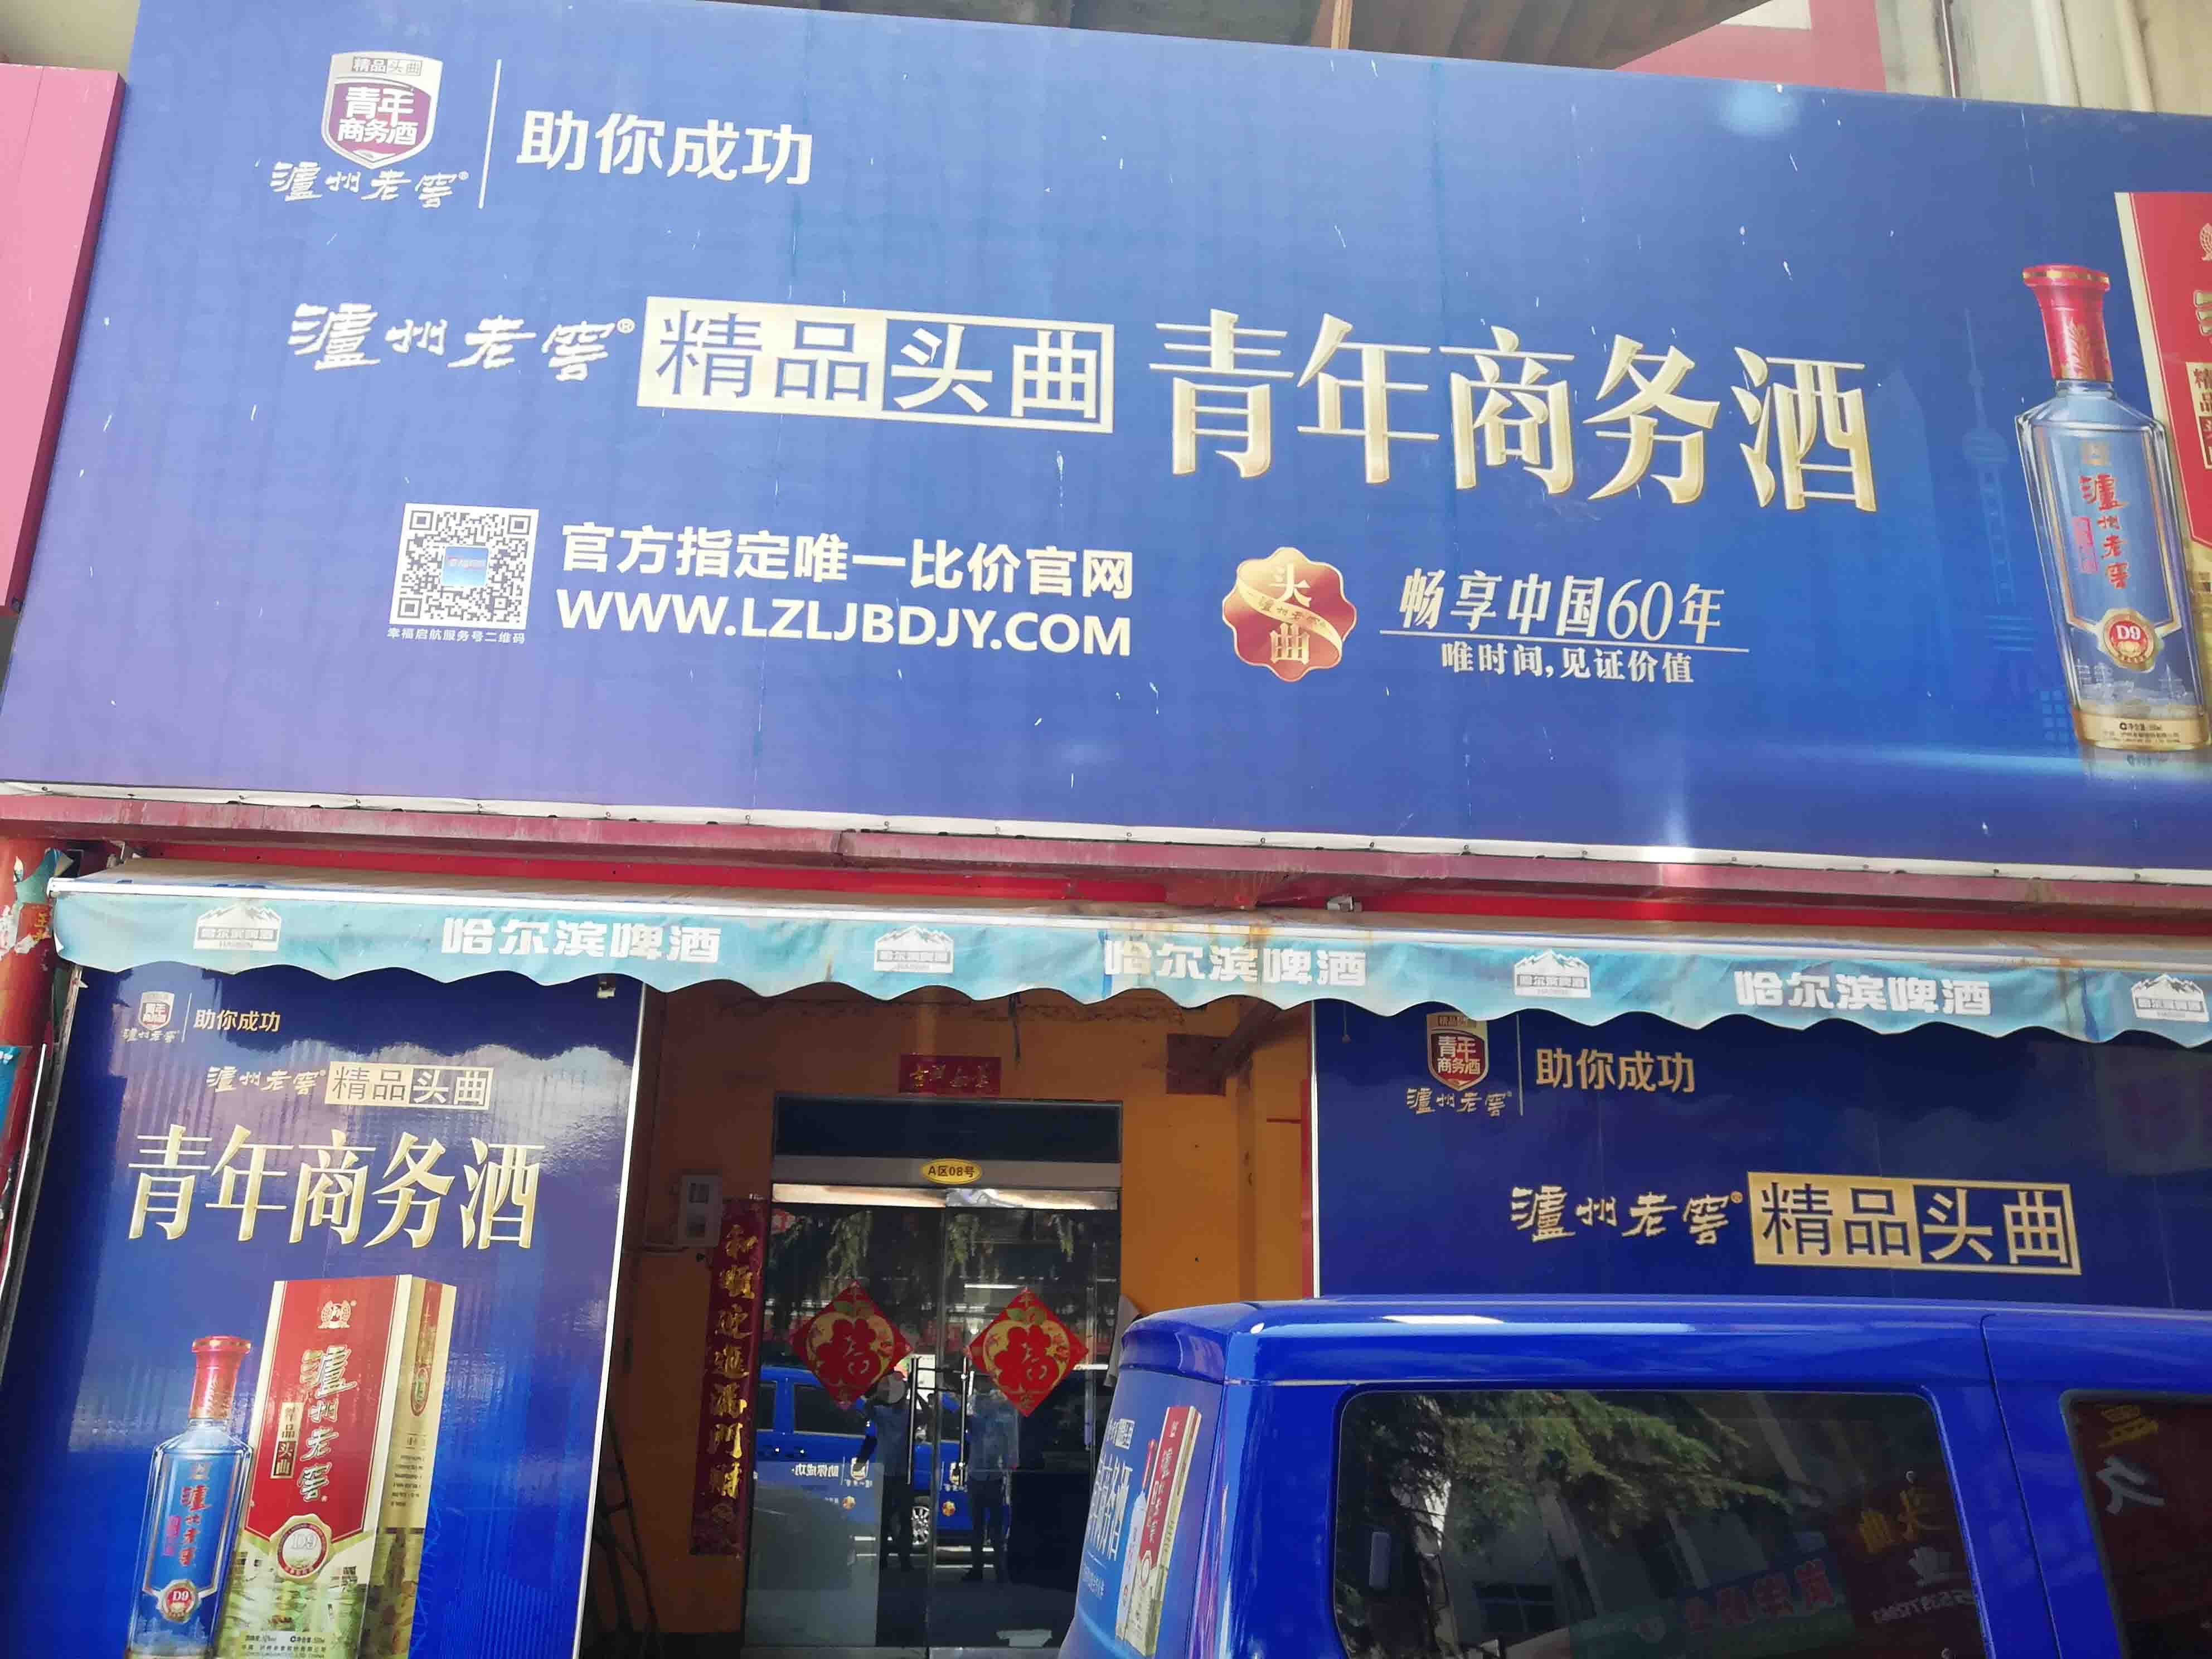 上海市场北街经济型写字楼在洛阳出租，旨在为预算有限的企业提供实惠的选择。我们的列表包含多种价格合理的高端办公空间